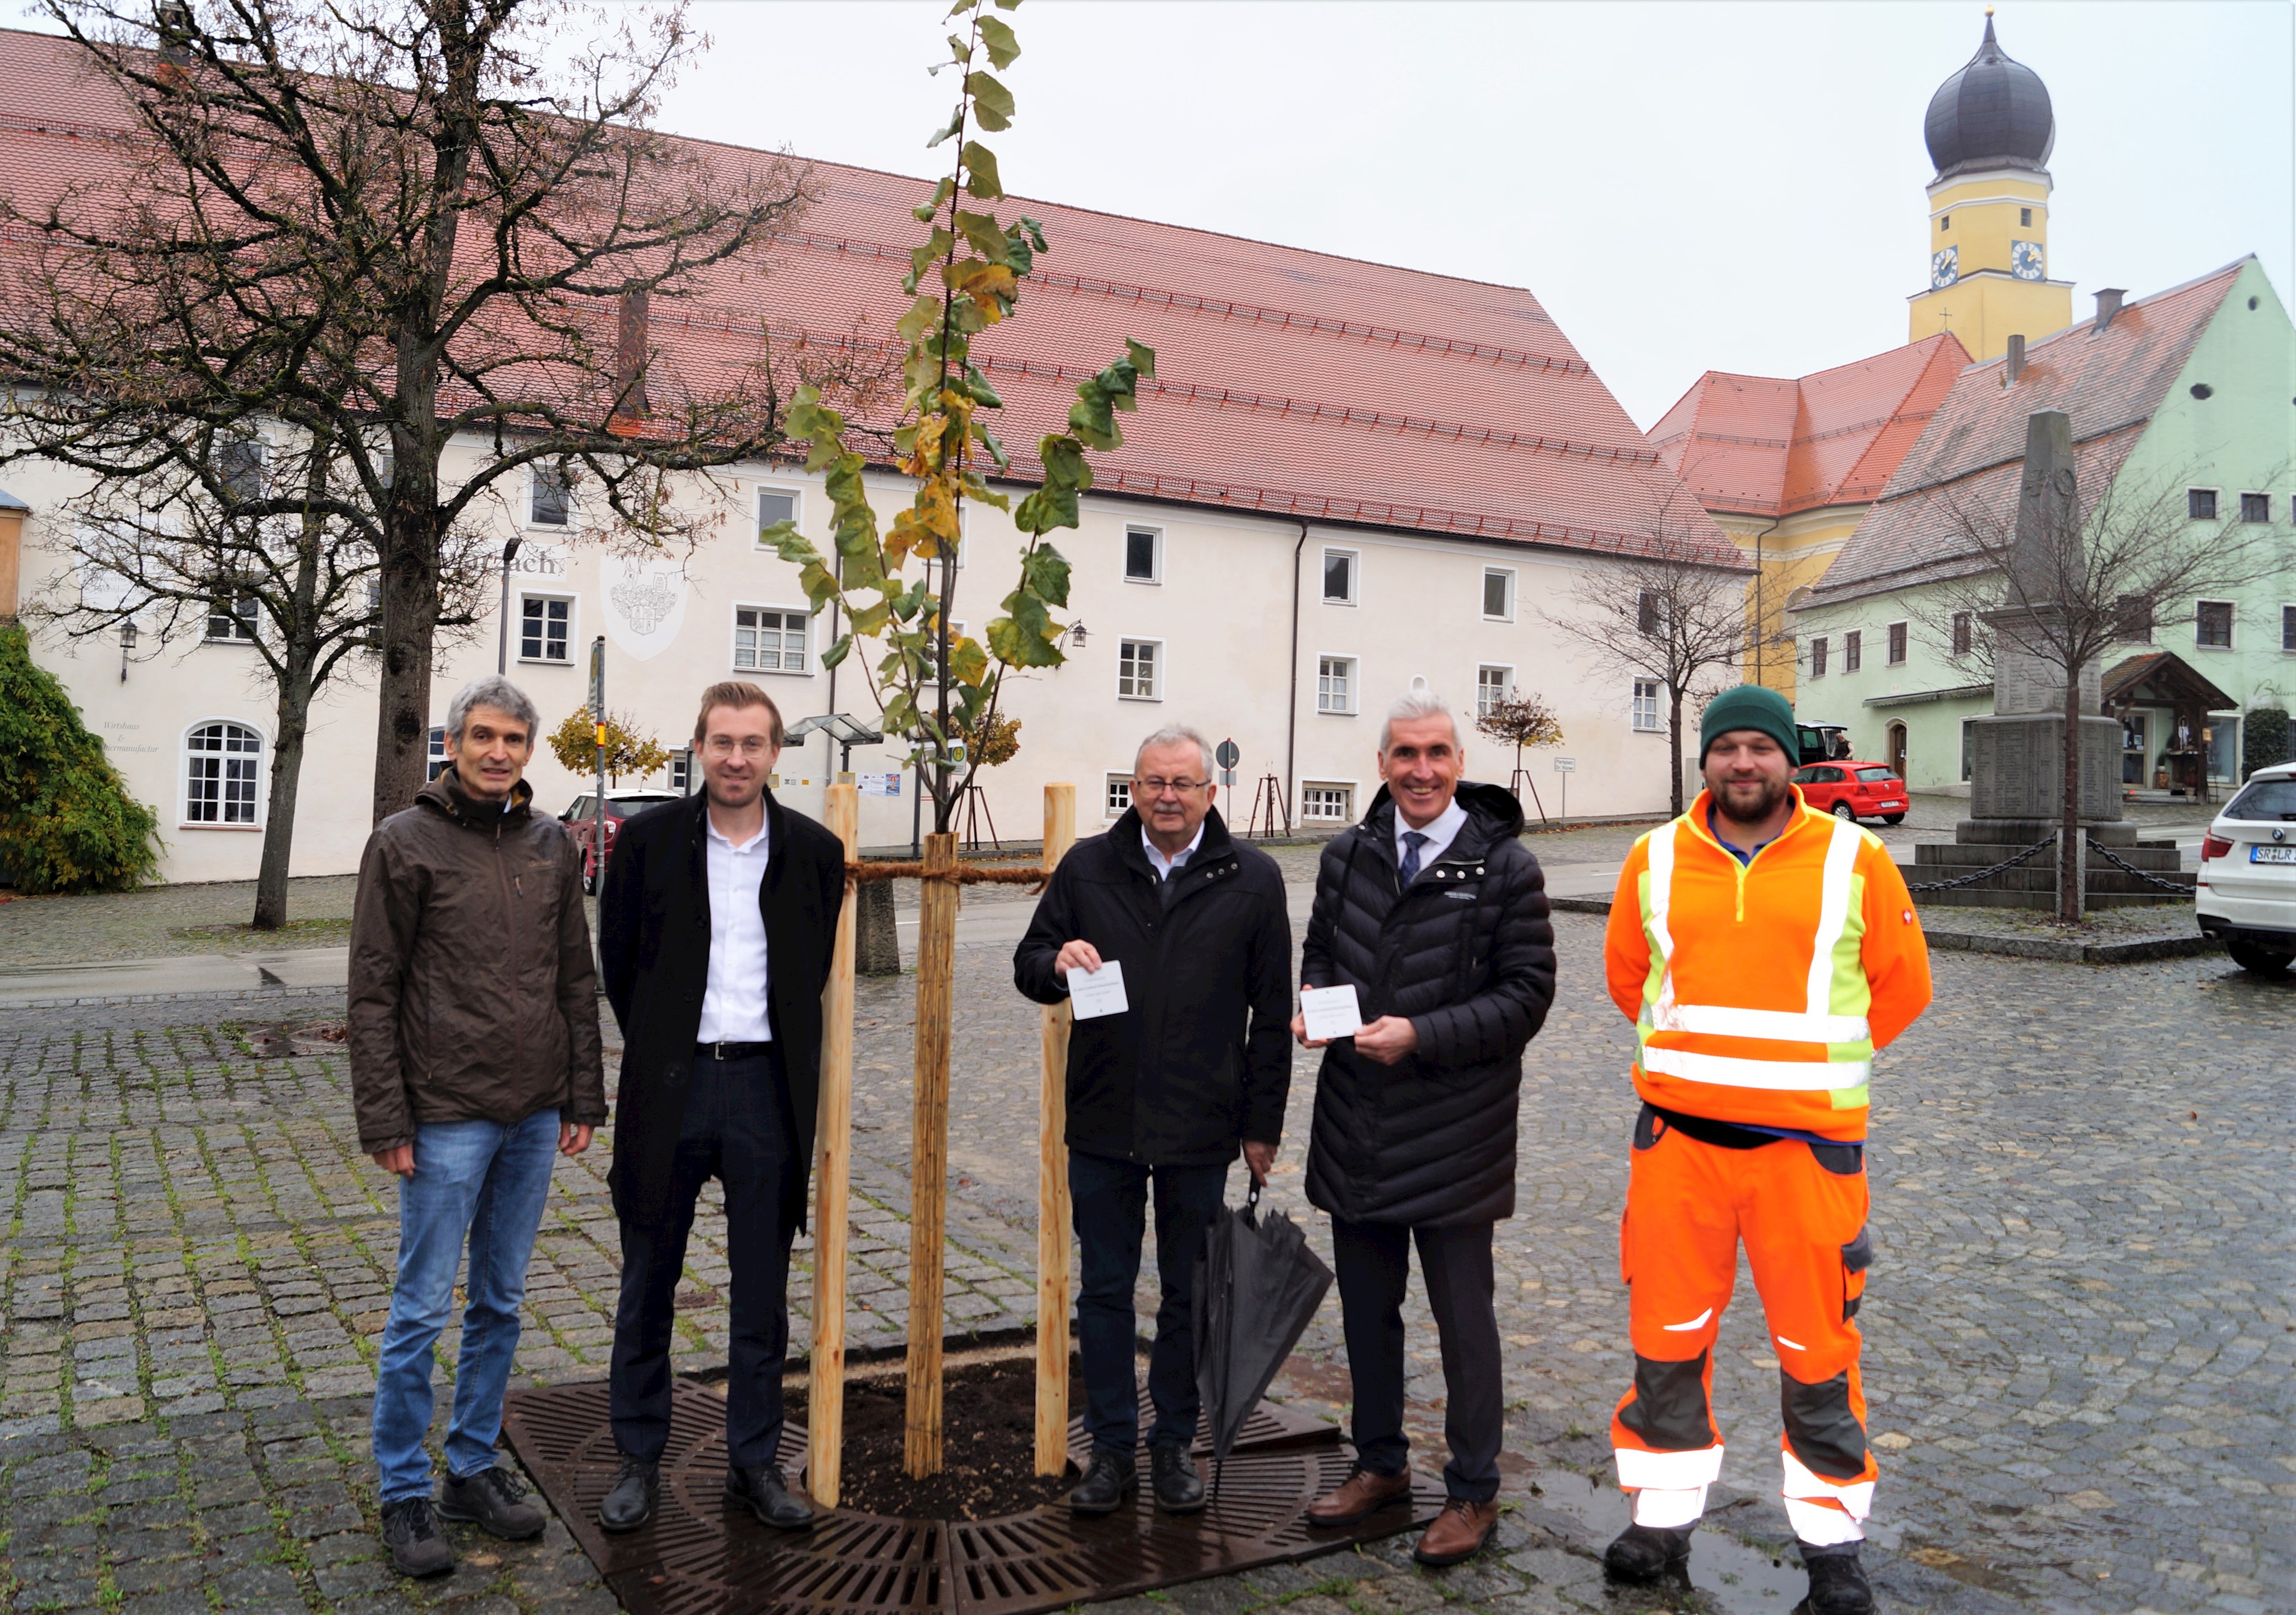 Baumpflanzaktion anlässlich des 50-jährigen Jubiläums des Landkreis Straubing-Bogen